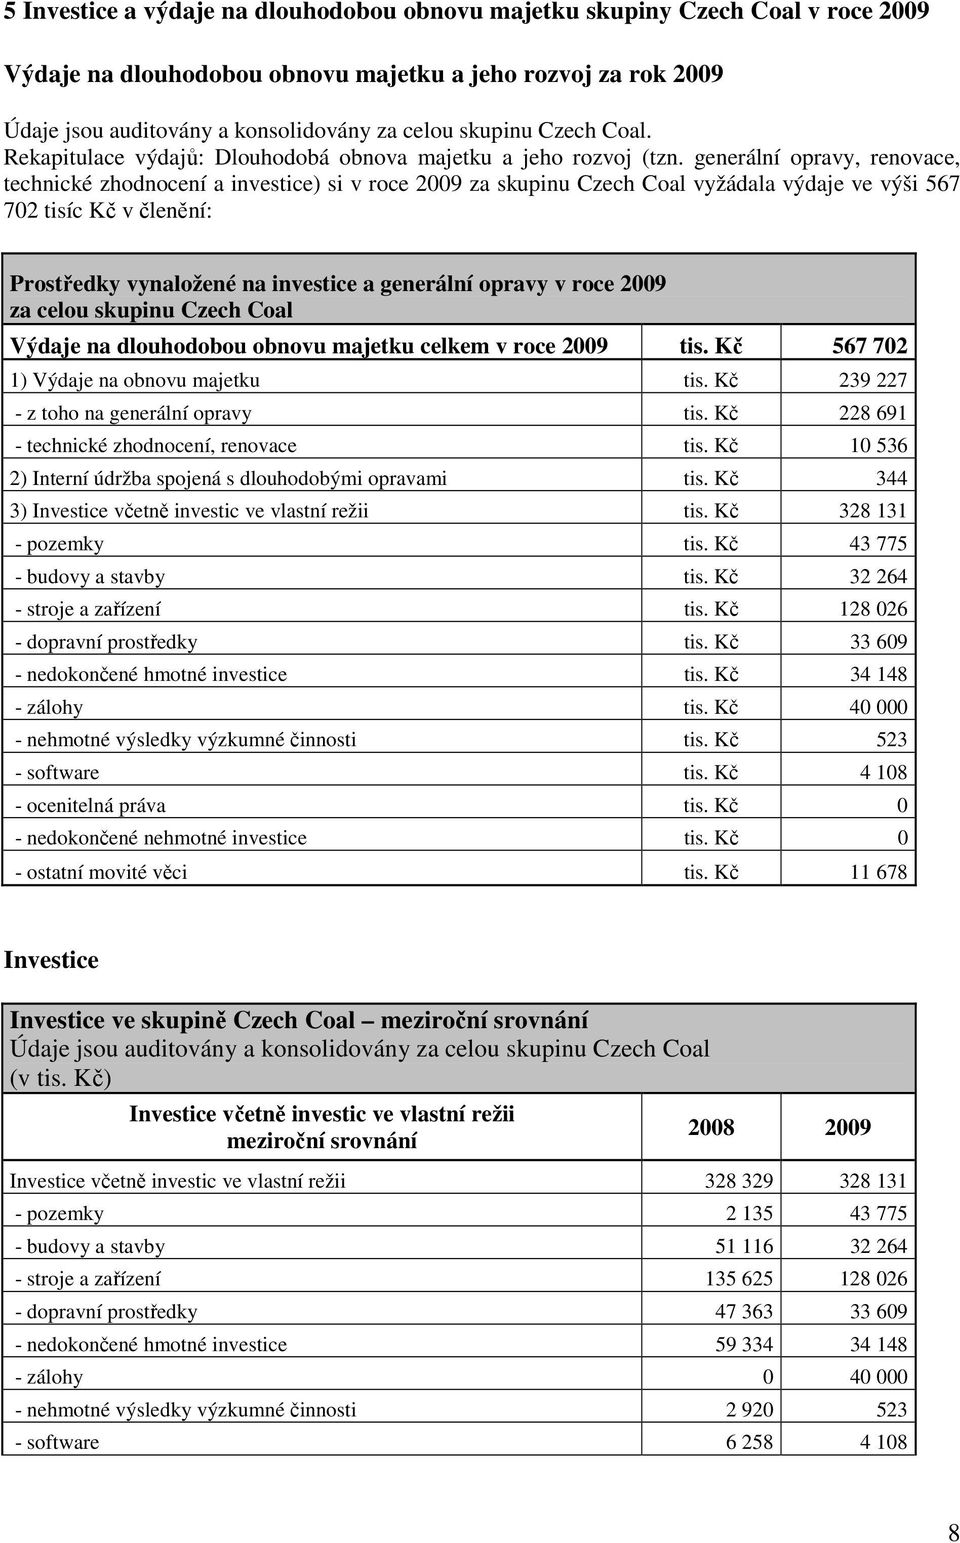 generální opravy, renovace, technické zhodnocení a investice) si v roce 2009 za skupinu Czech Coal vyžádala výdaje ve výši 567 702 tisíc Kč v členění: Prostředky vynaložené na investice a generální